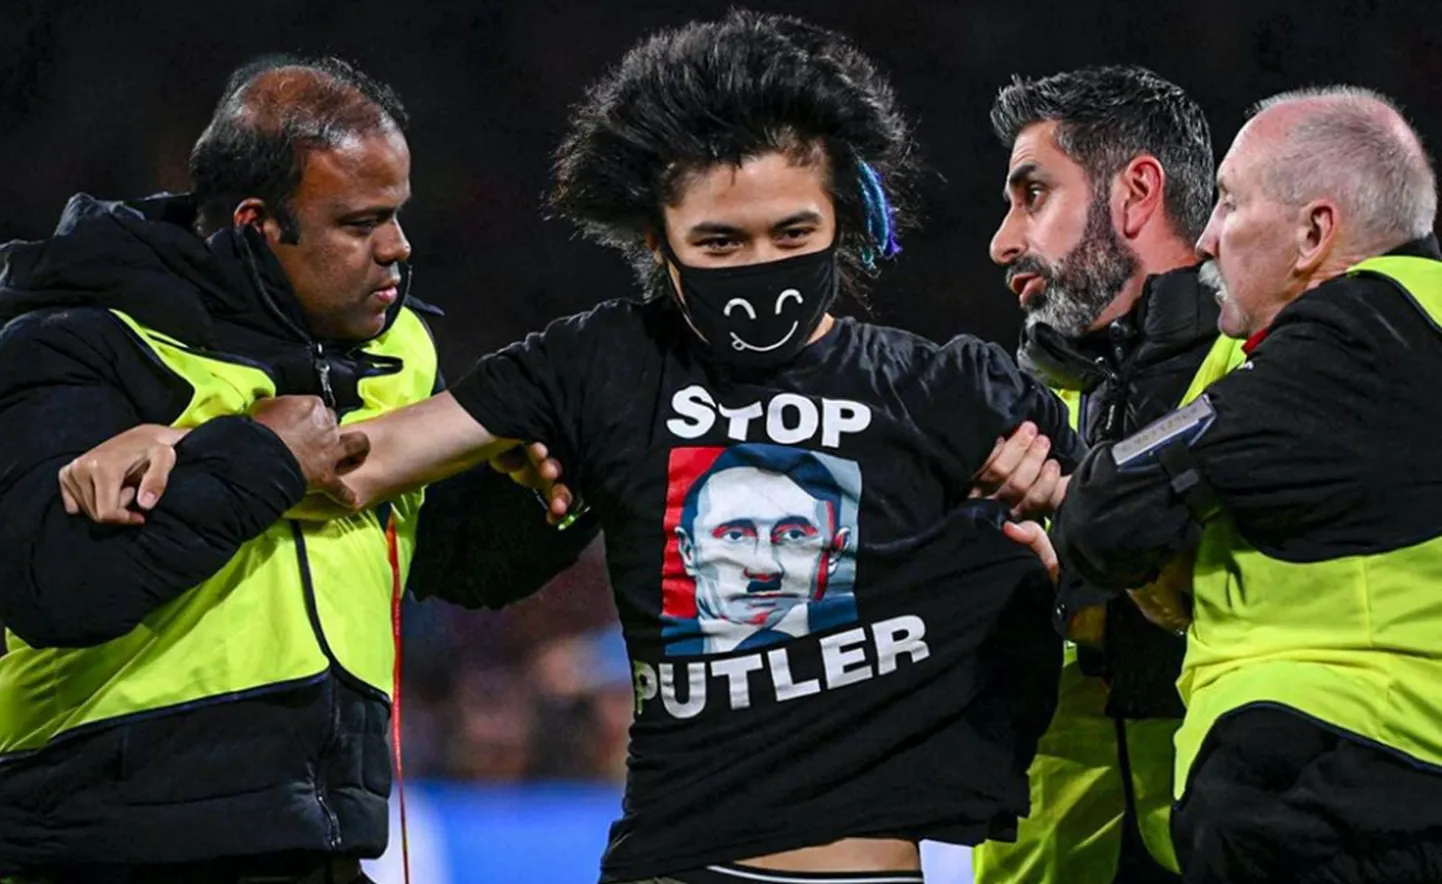 Протестующий, сорвавший финал чемпионата мира по футболу среди женщин, был одета в футболку, которая говорит тысячу слов.